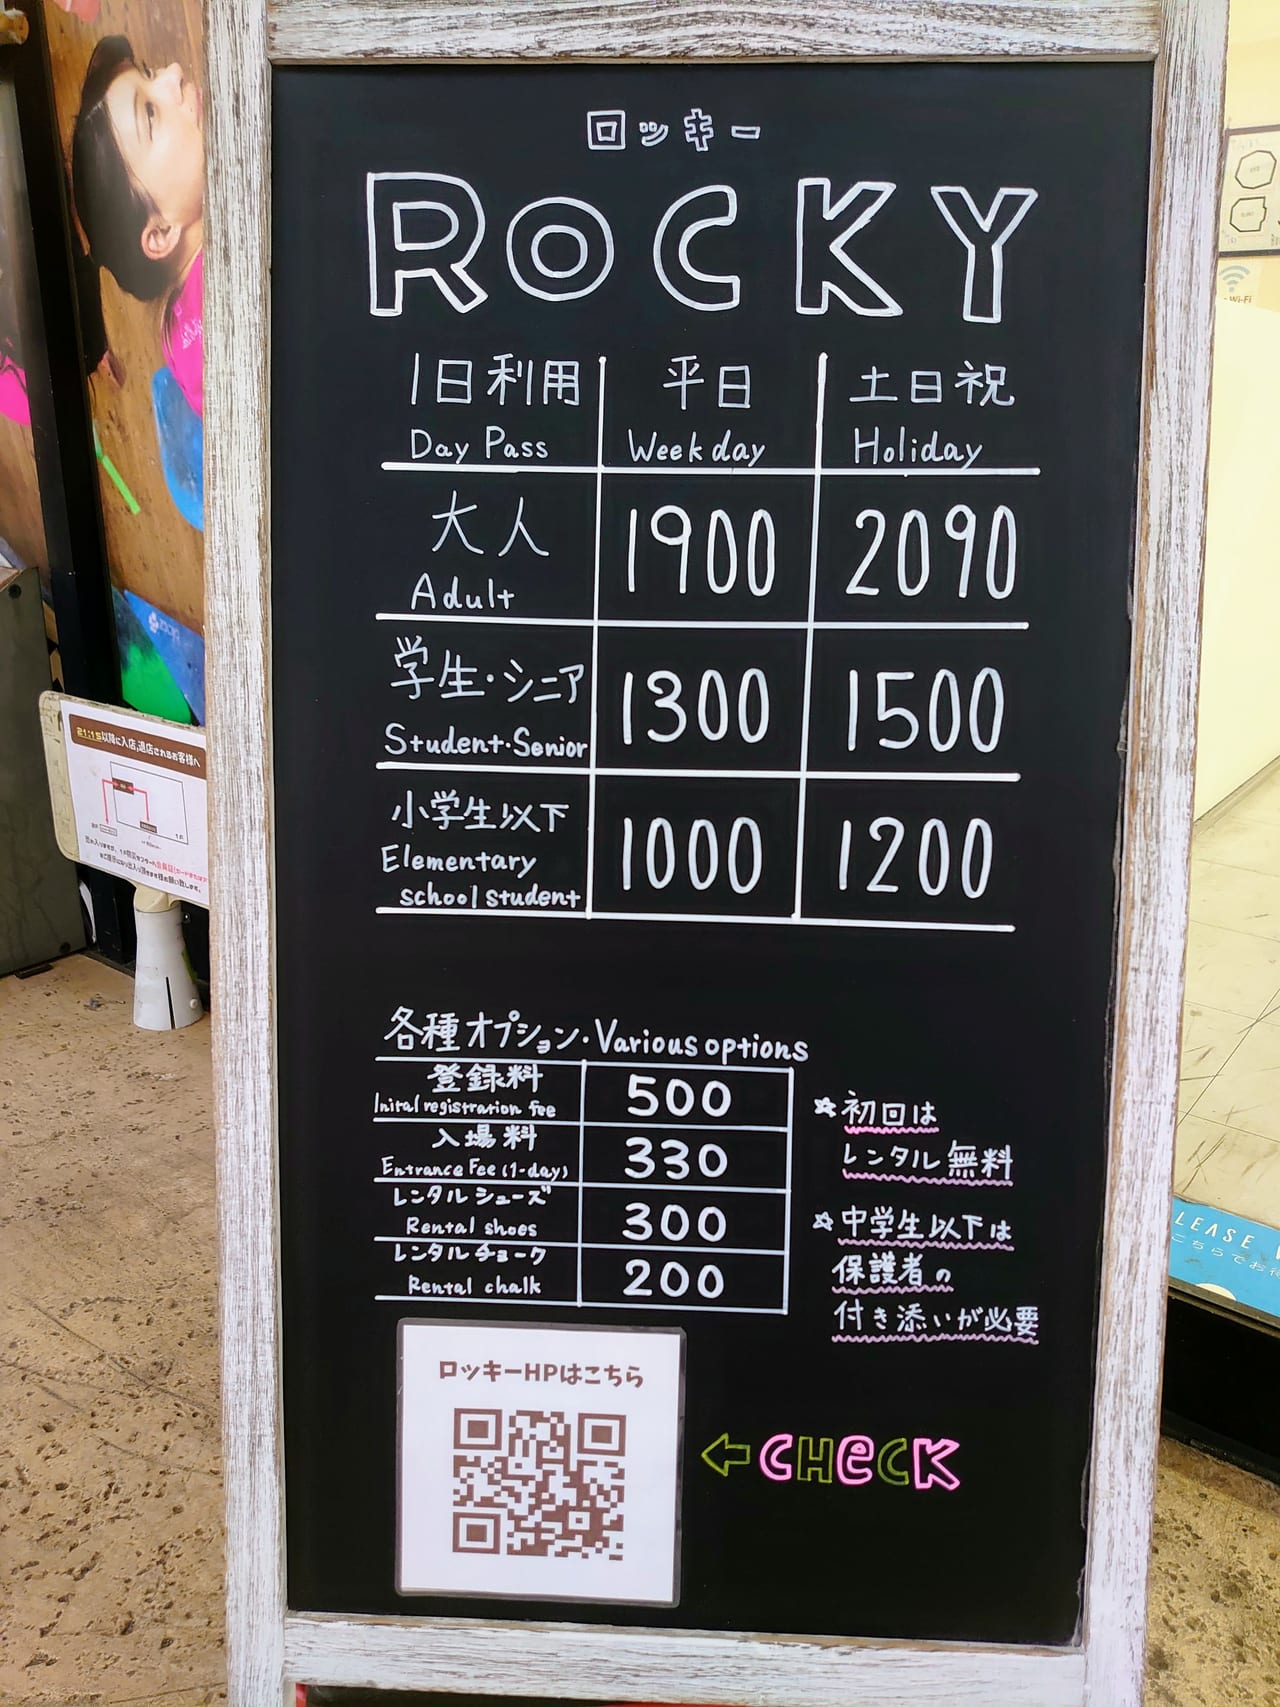 ロッキー_一日料金